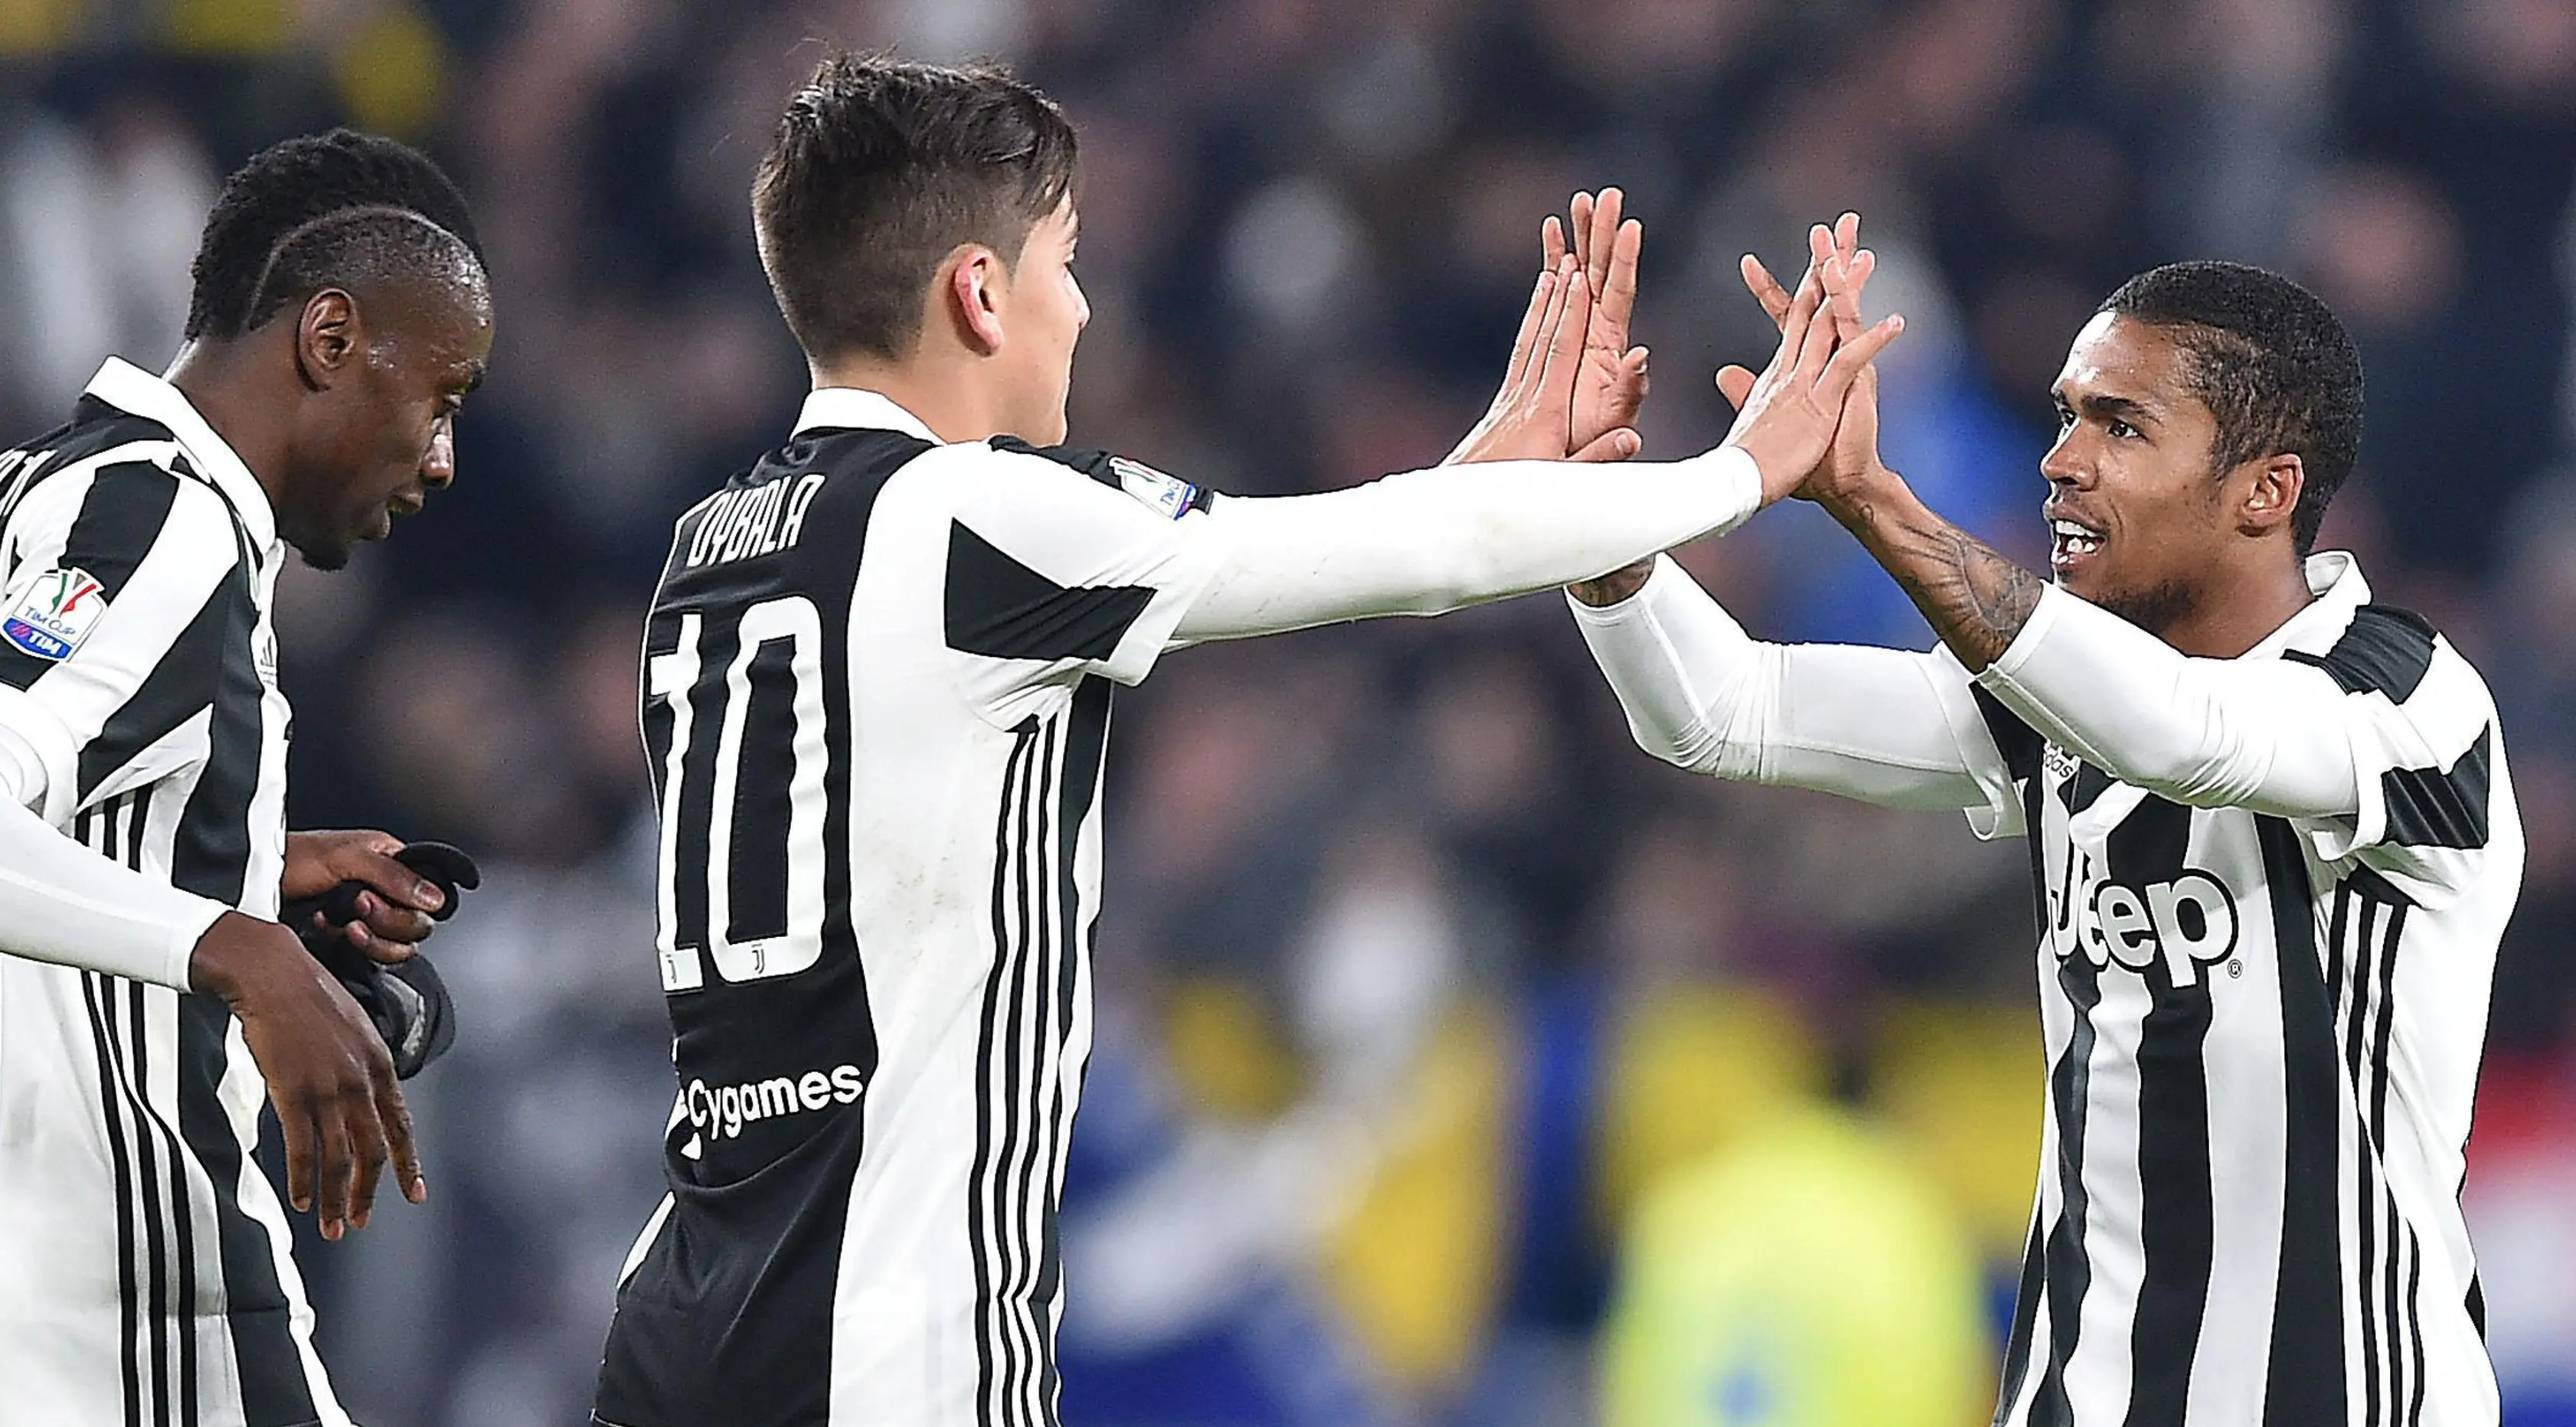 Pemain Juventus, Douglas Costa bersama rekan setim merayakan golnya ke gawang klub sekota, Torino dalam lanjutan Coppa Italia. (Andrea Di Marco/ANSA via AP)